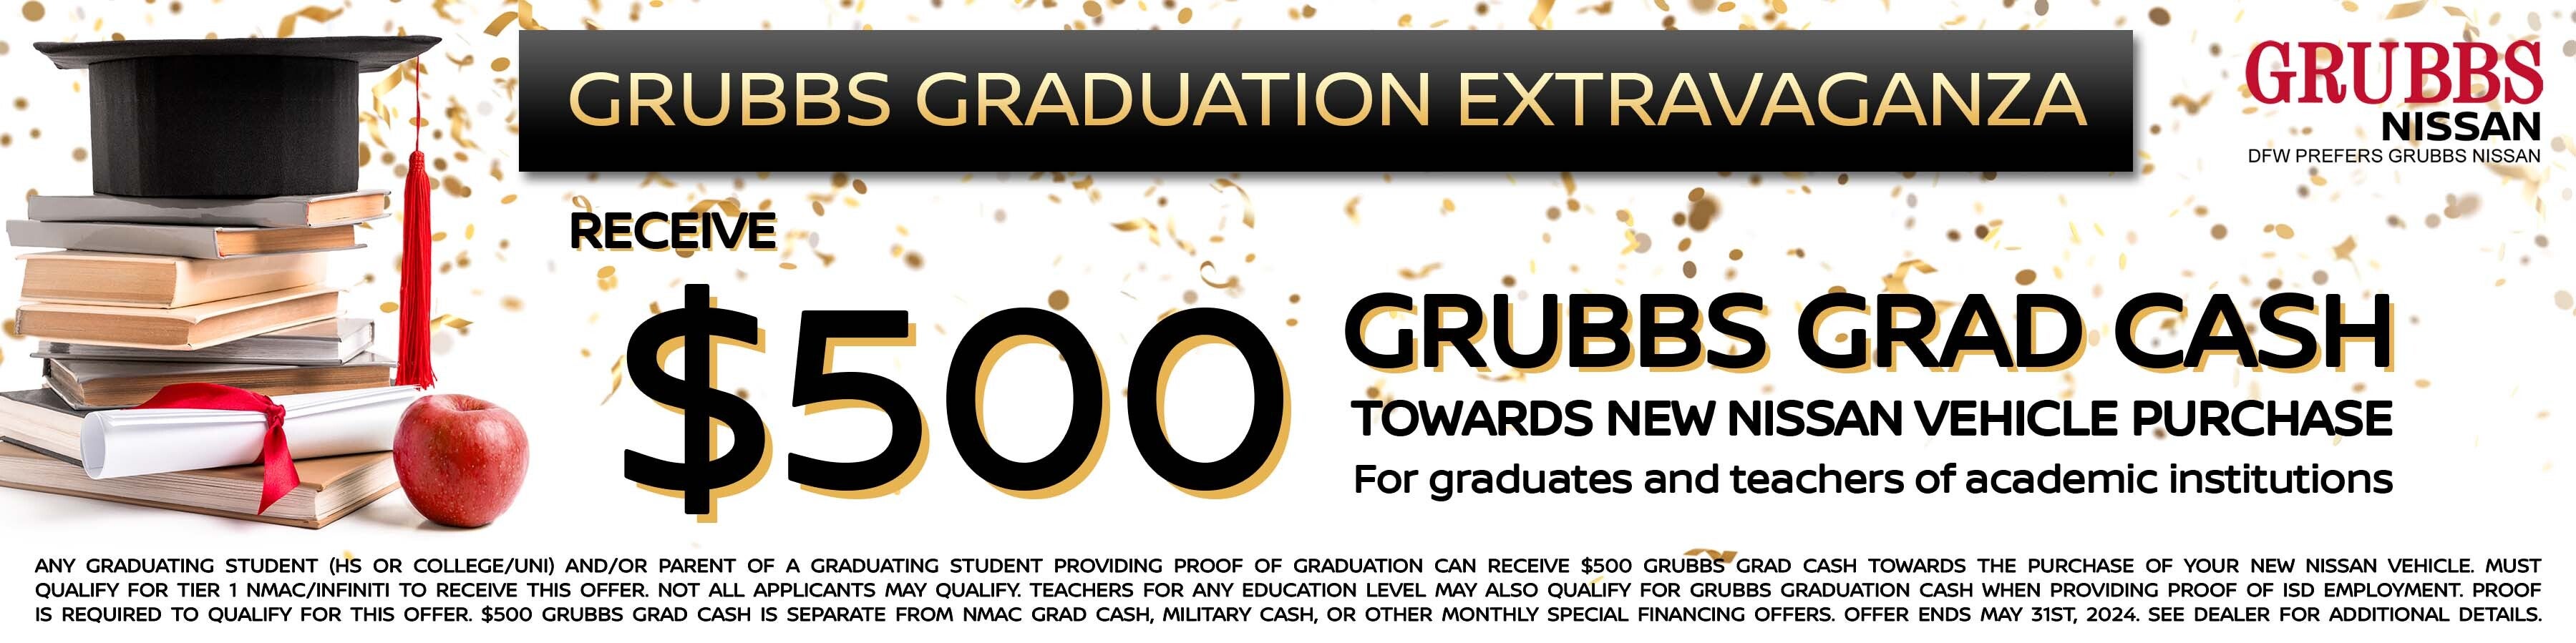 Grubbs Graduation Extravaganza